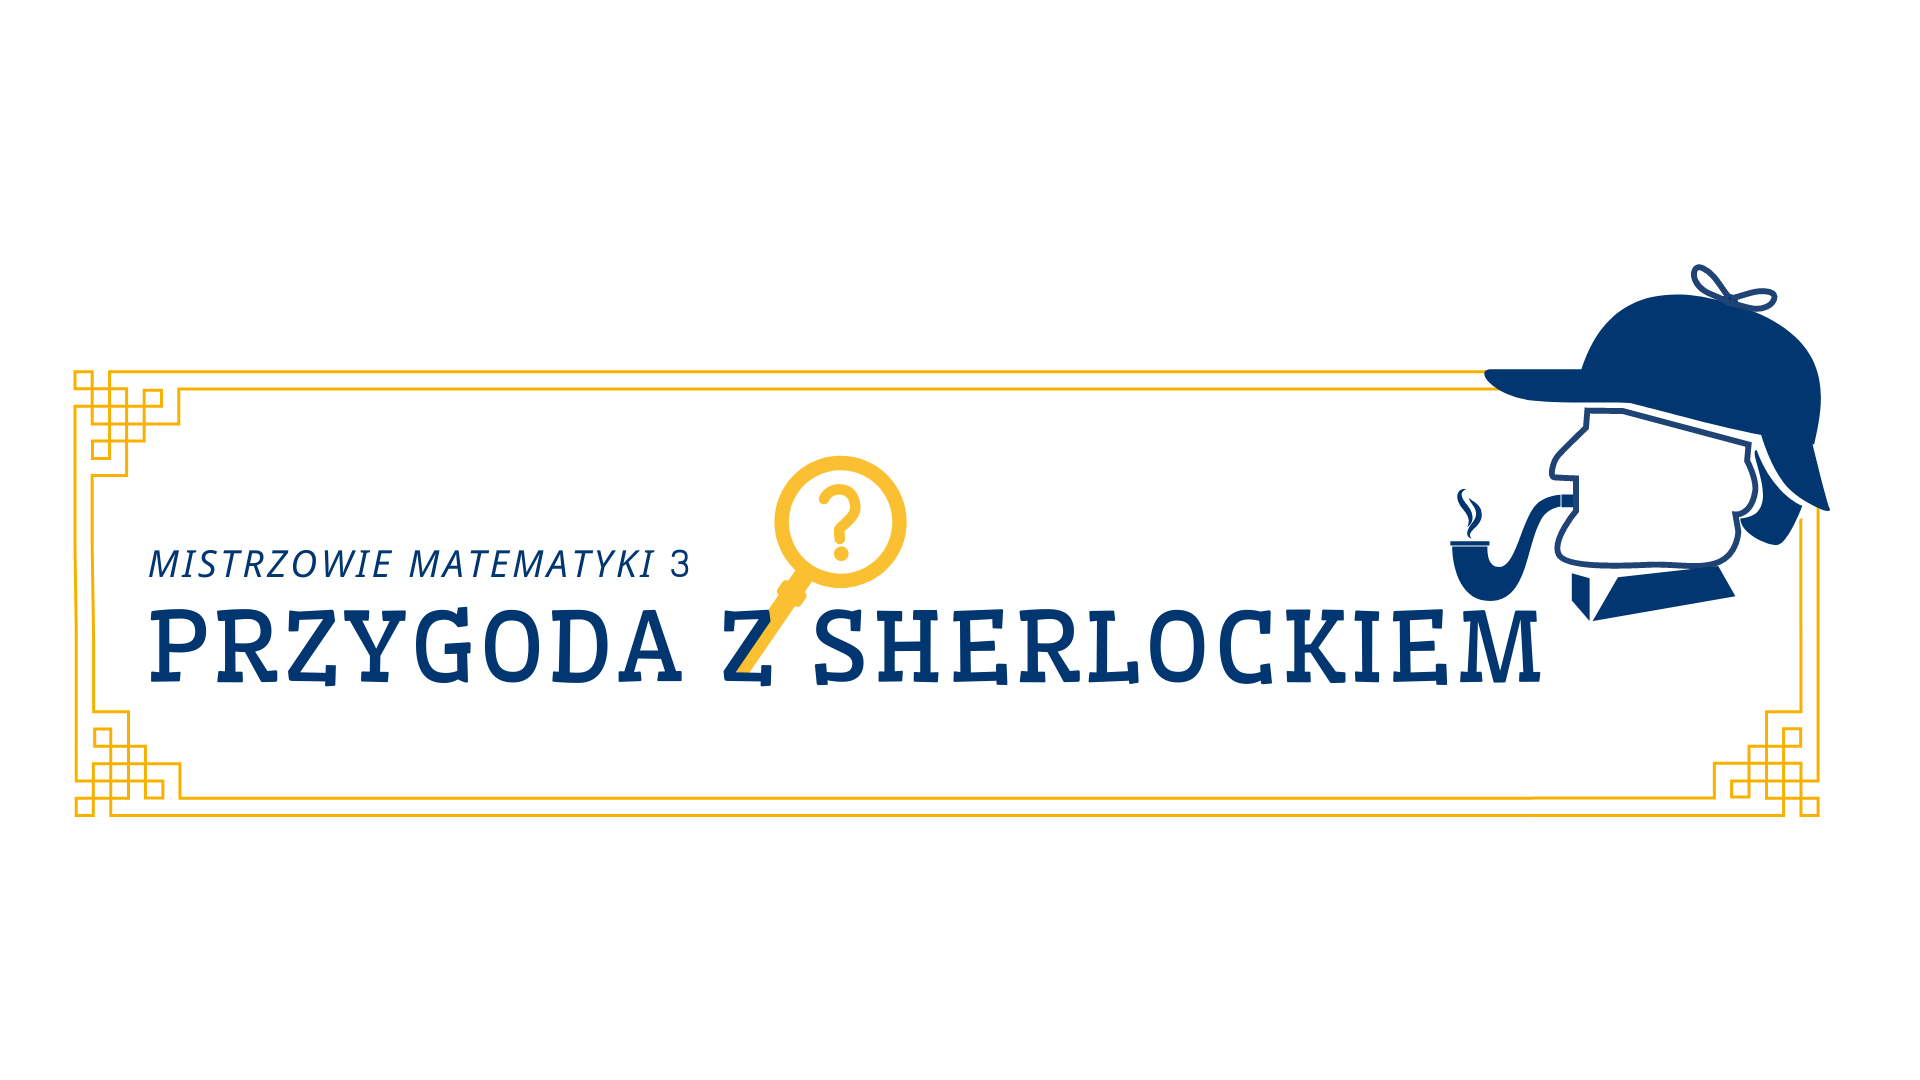 Mistrzowie Matematyki 3 - Przygoda z Sherlockiem